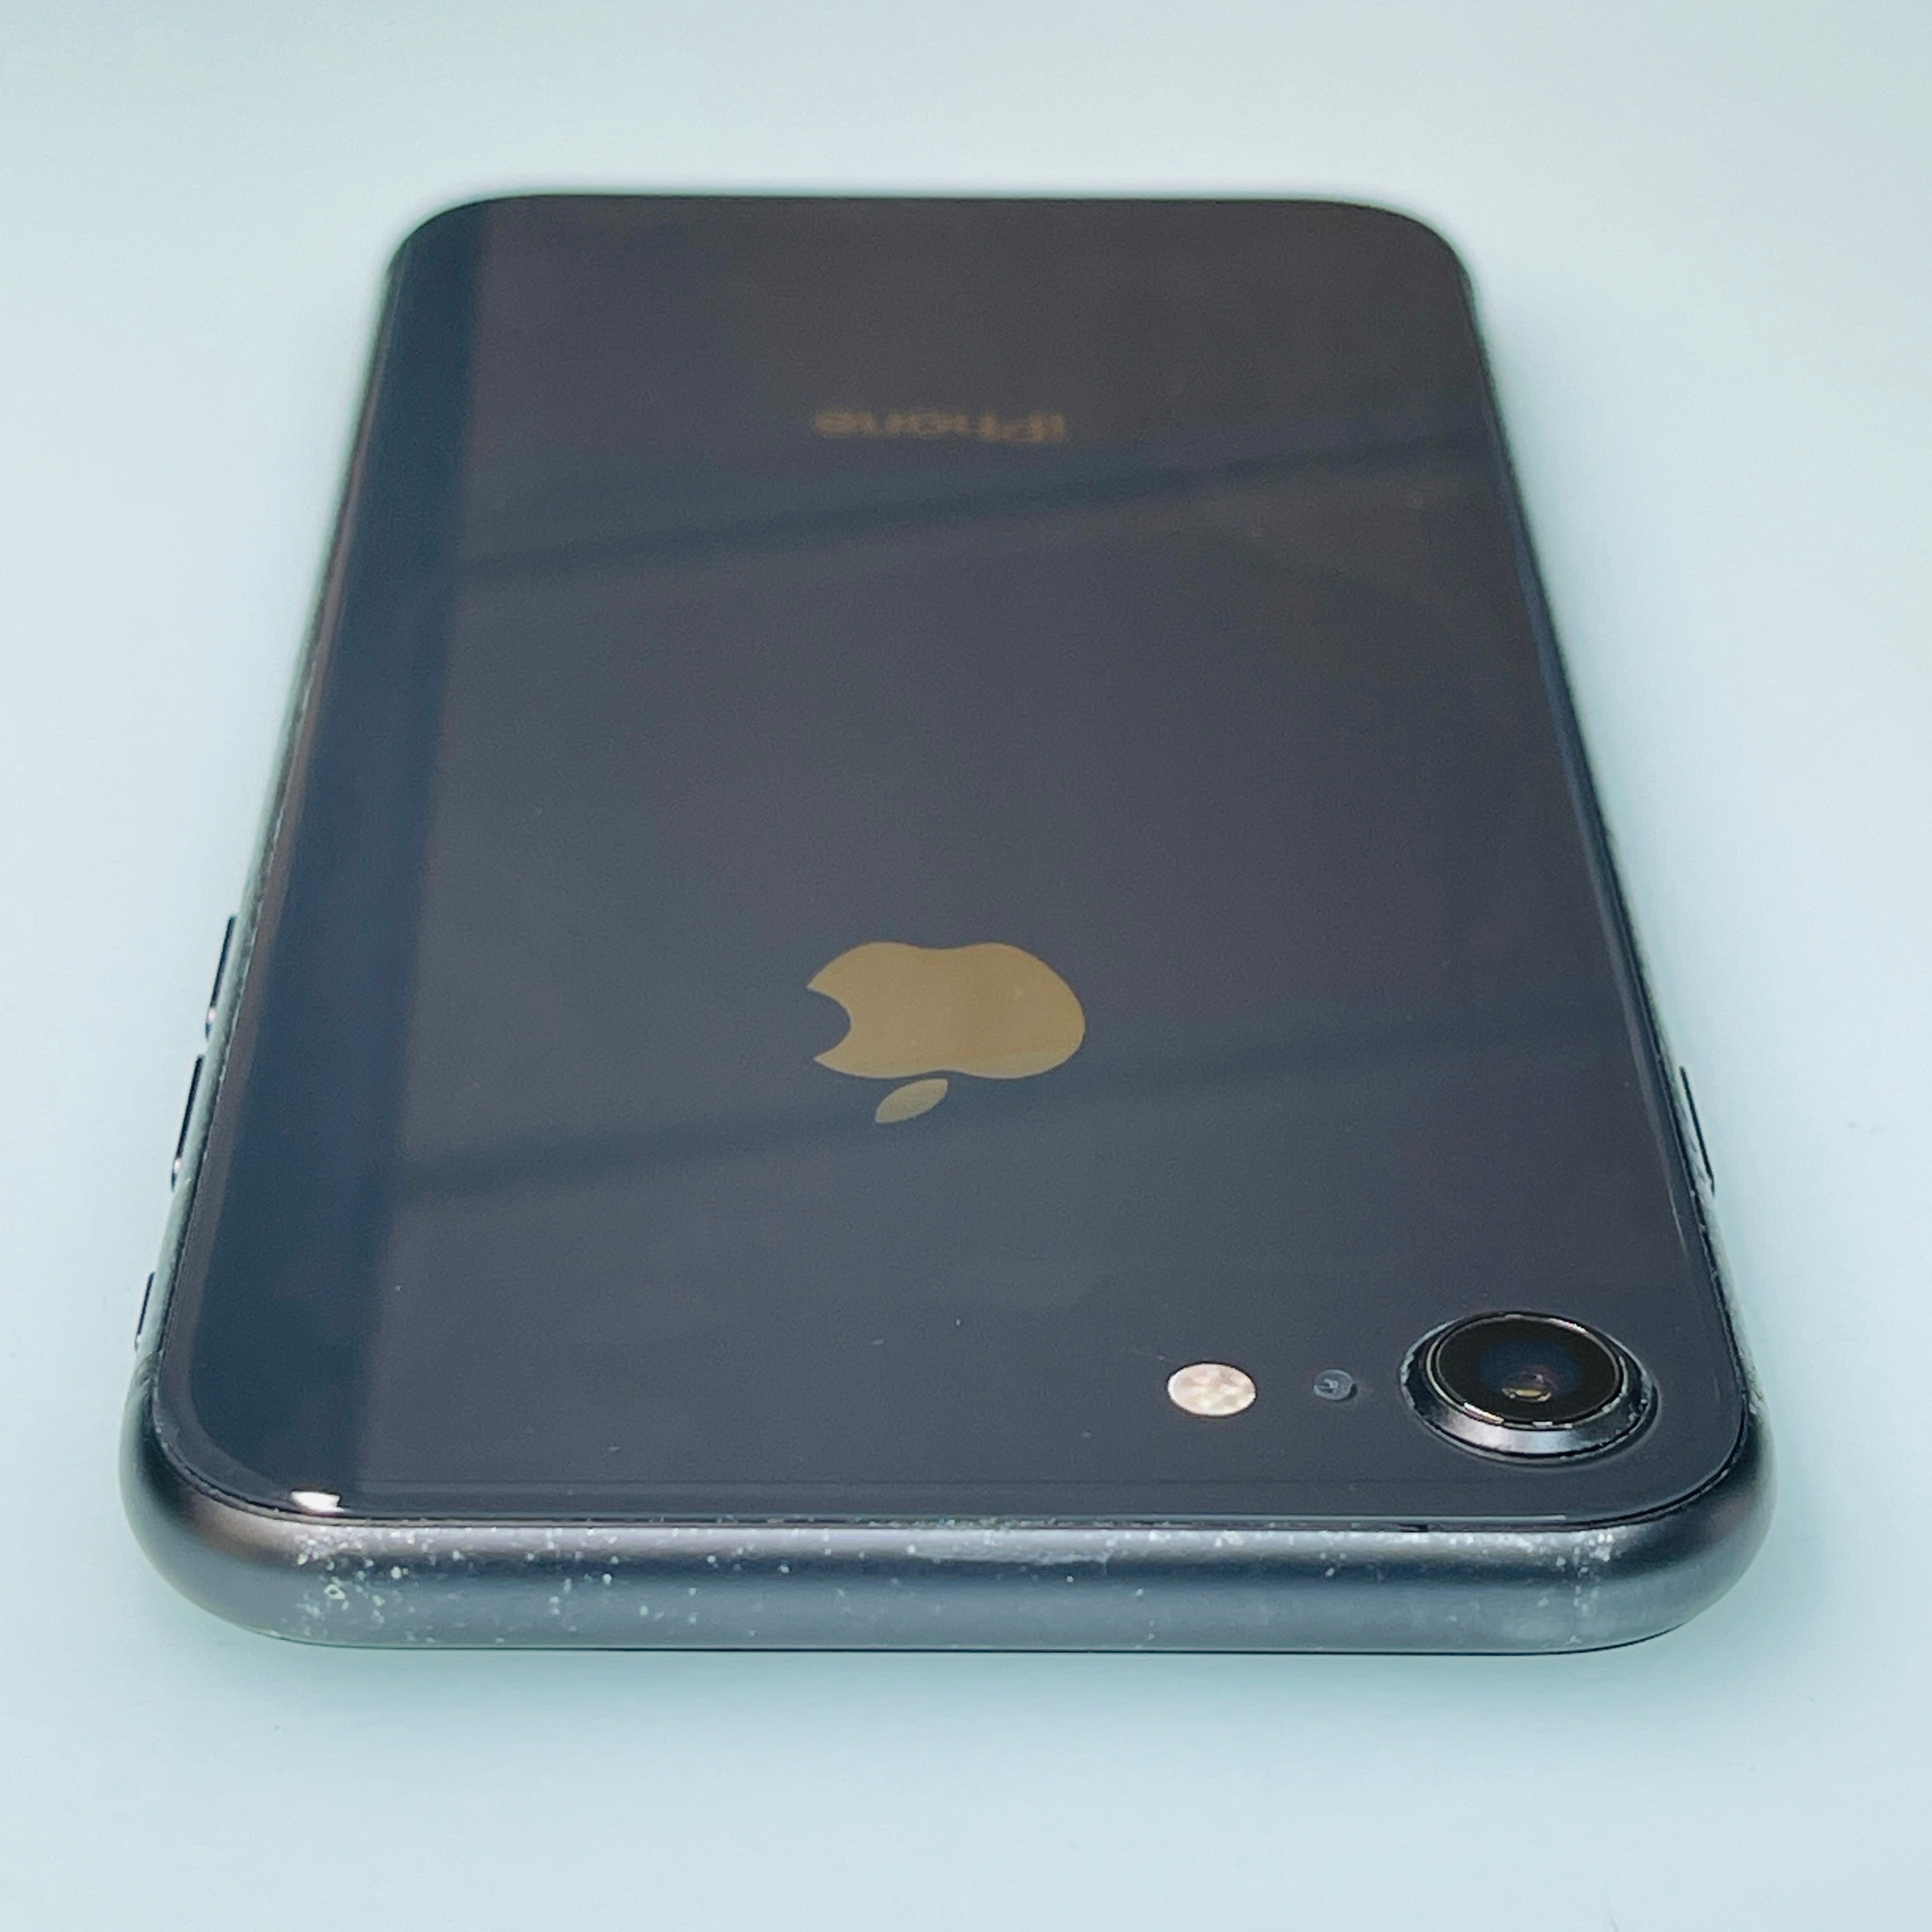 Apple iPhone 8 GB Space Grey Unlocked READ DESCRIPTION REF